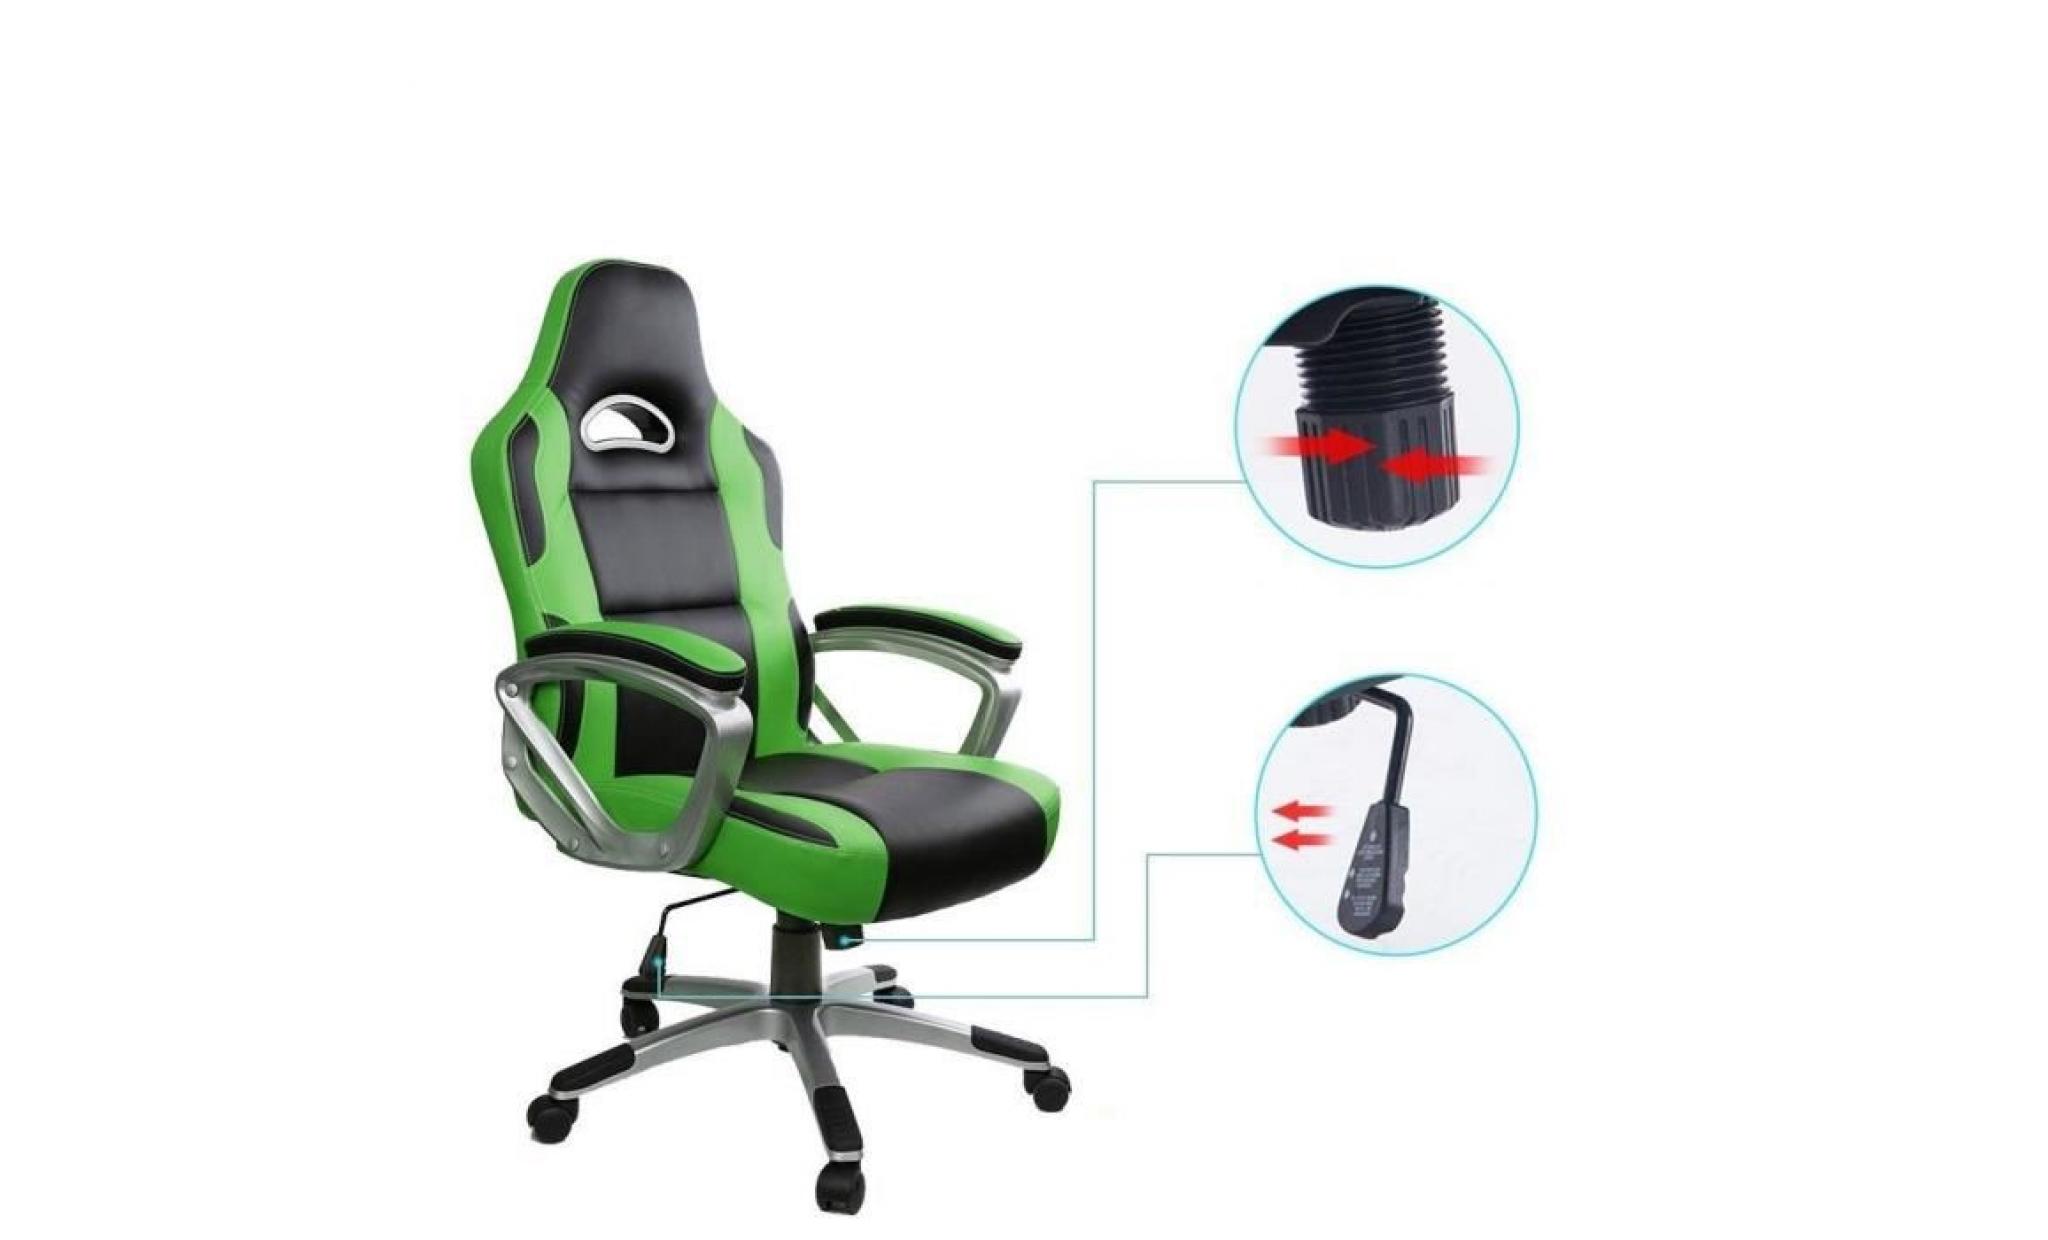 racing chaise de bureau pu   gaming chaise   fauteuil siège gaming   hauteur réglable  vert   intimate wm heart pas cher